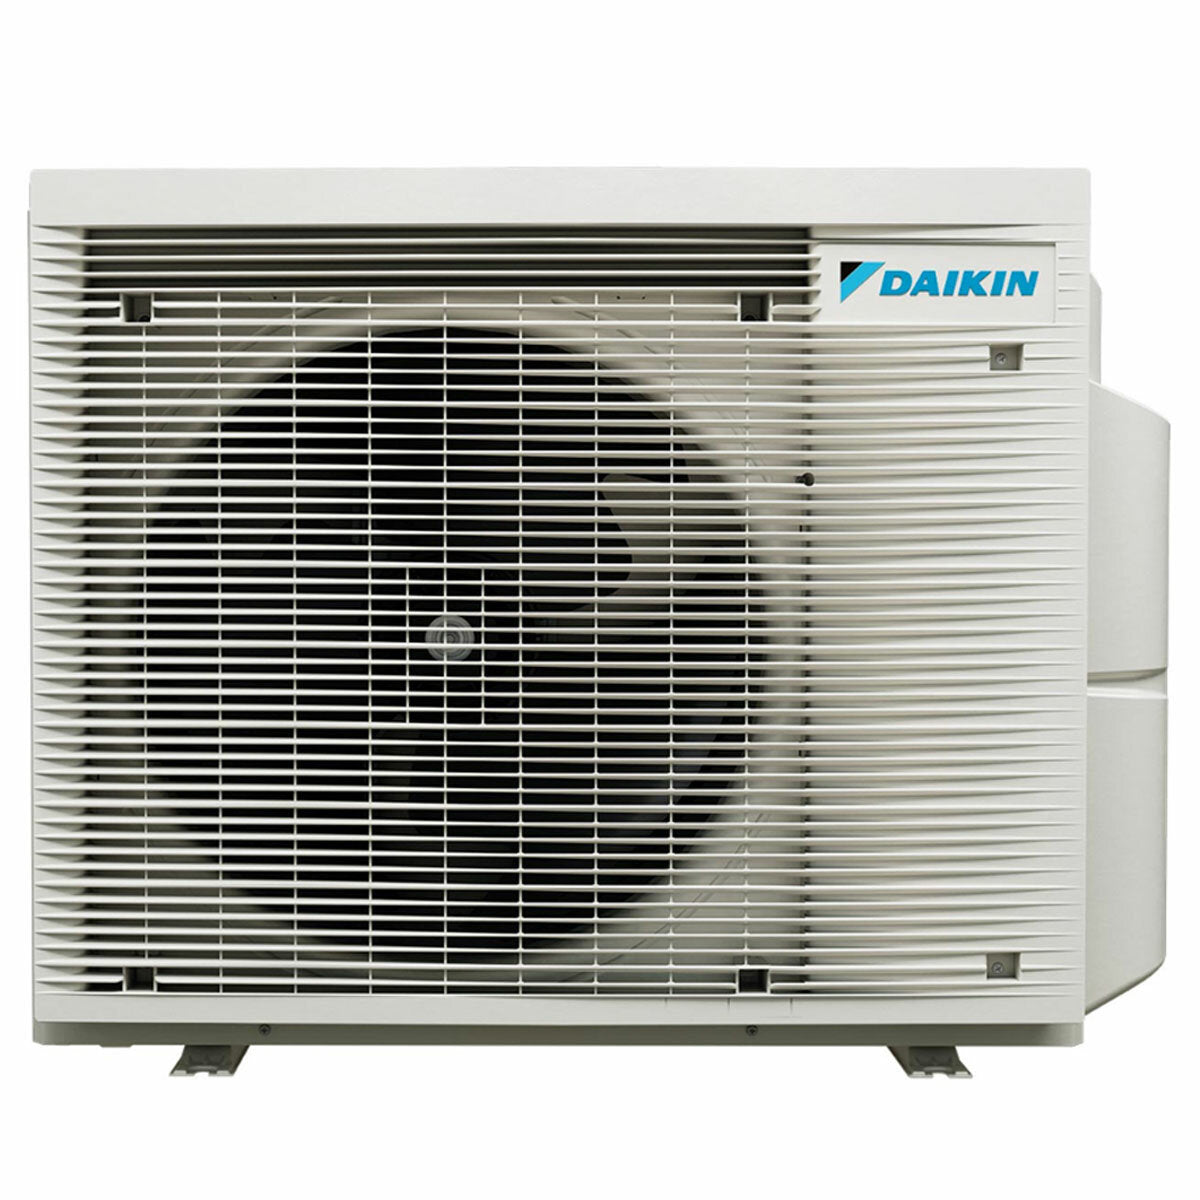 Daikin Emura 3 trial split air conditioner 7000+7000+15000 BTU inverter A+ wifi outdoor unit 6.8 kW Black